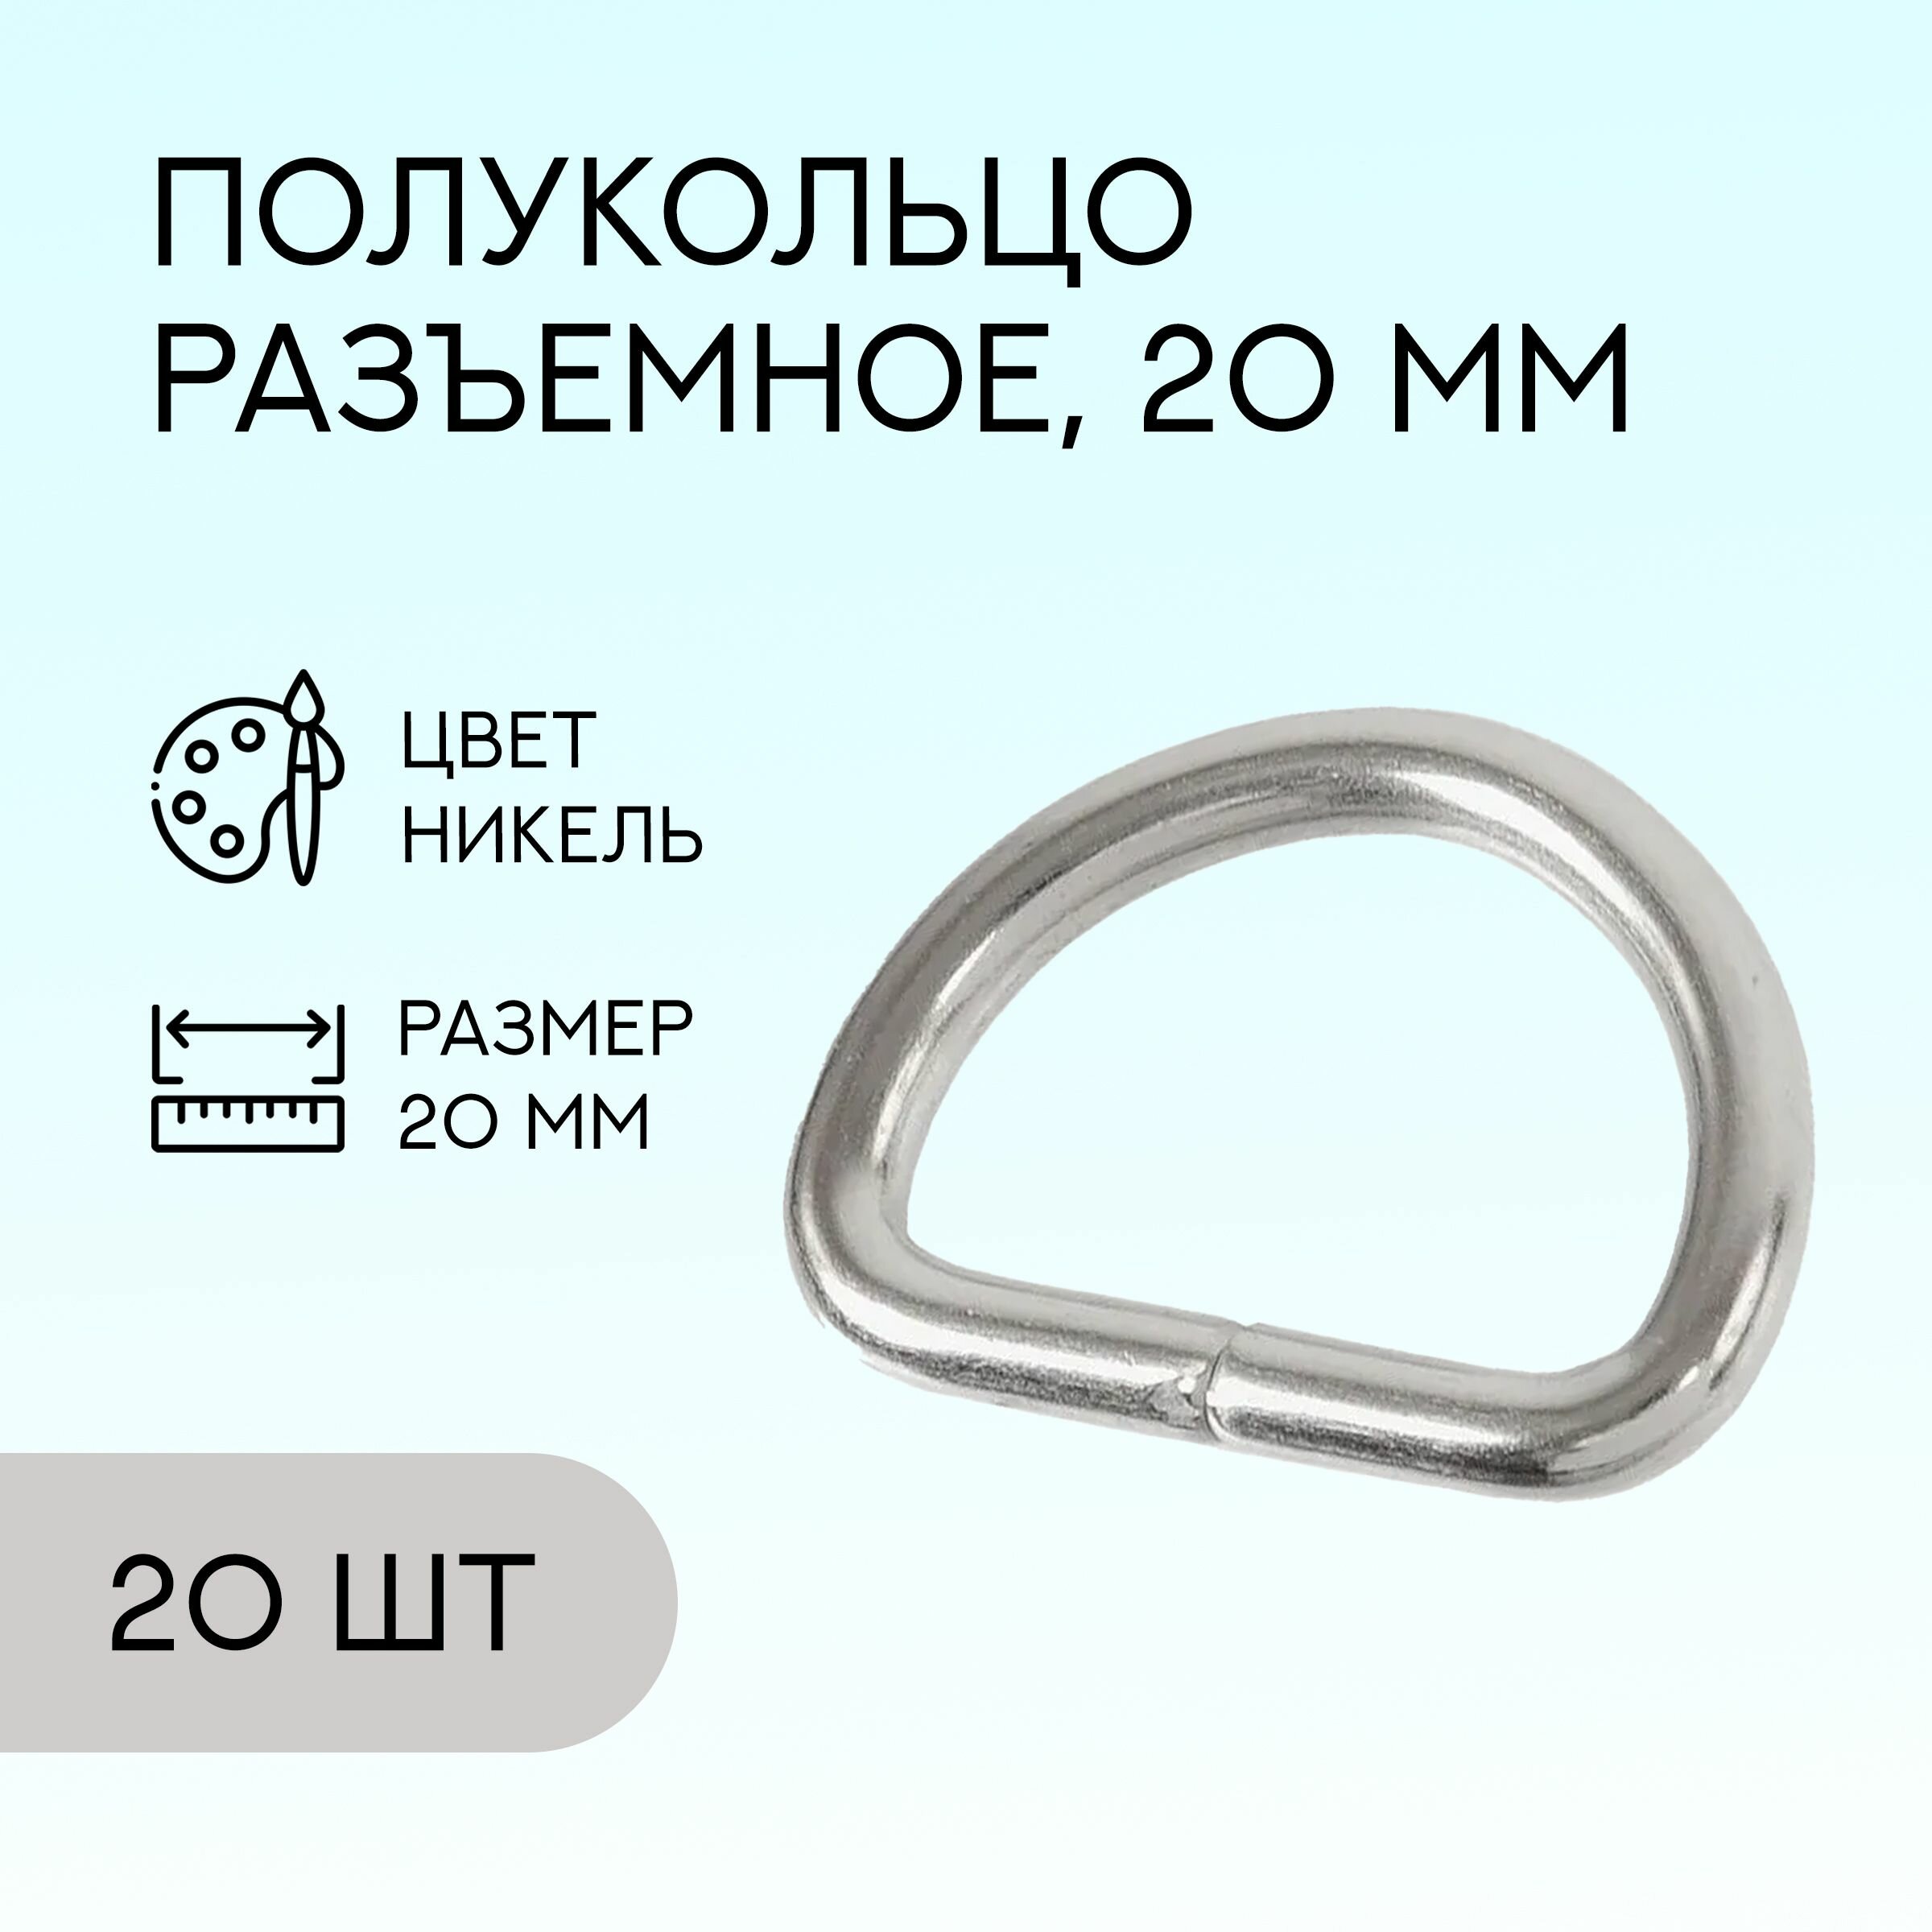 Полукольцо разъемное, 20 мм, никель, 20 шт. / кольцо для сумок и рукоделия / FG-149926_20